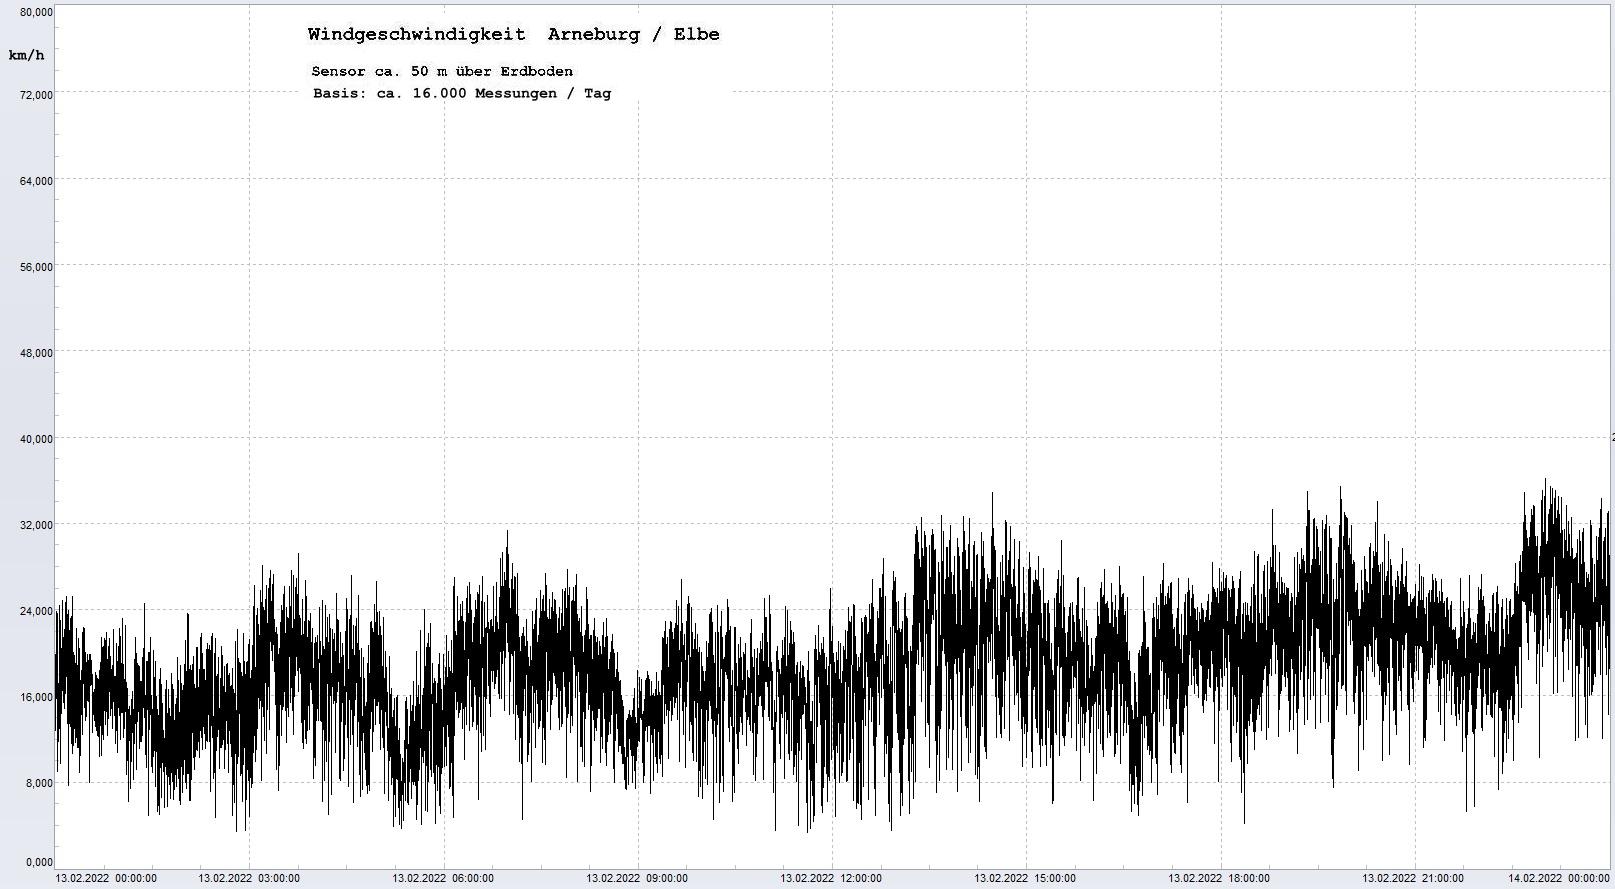 Arneburg Tages-Diagramm Winddaten, 13.02.2022
  Diagramm, Sensor auf Gebäude, ca. 50 m über Erdboden, Basis: 5s-Aufzeichnung